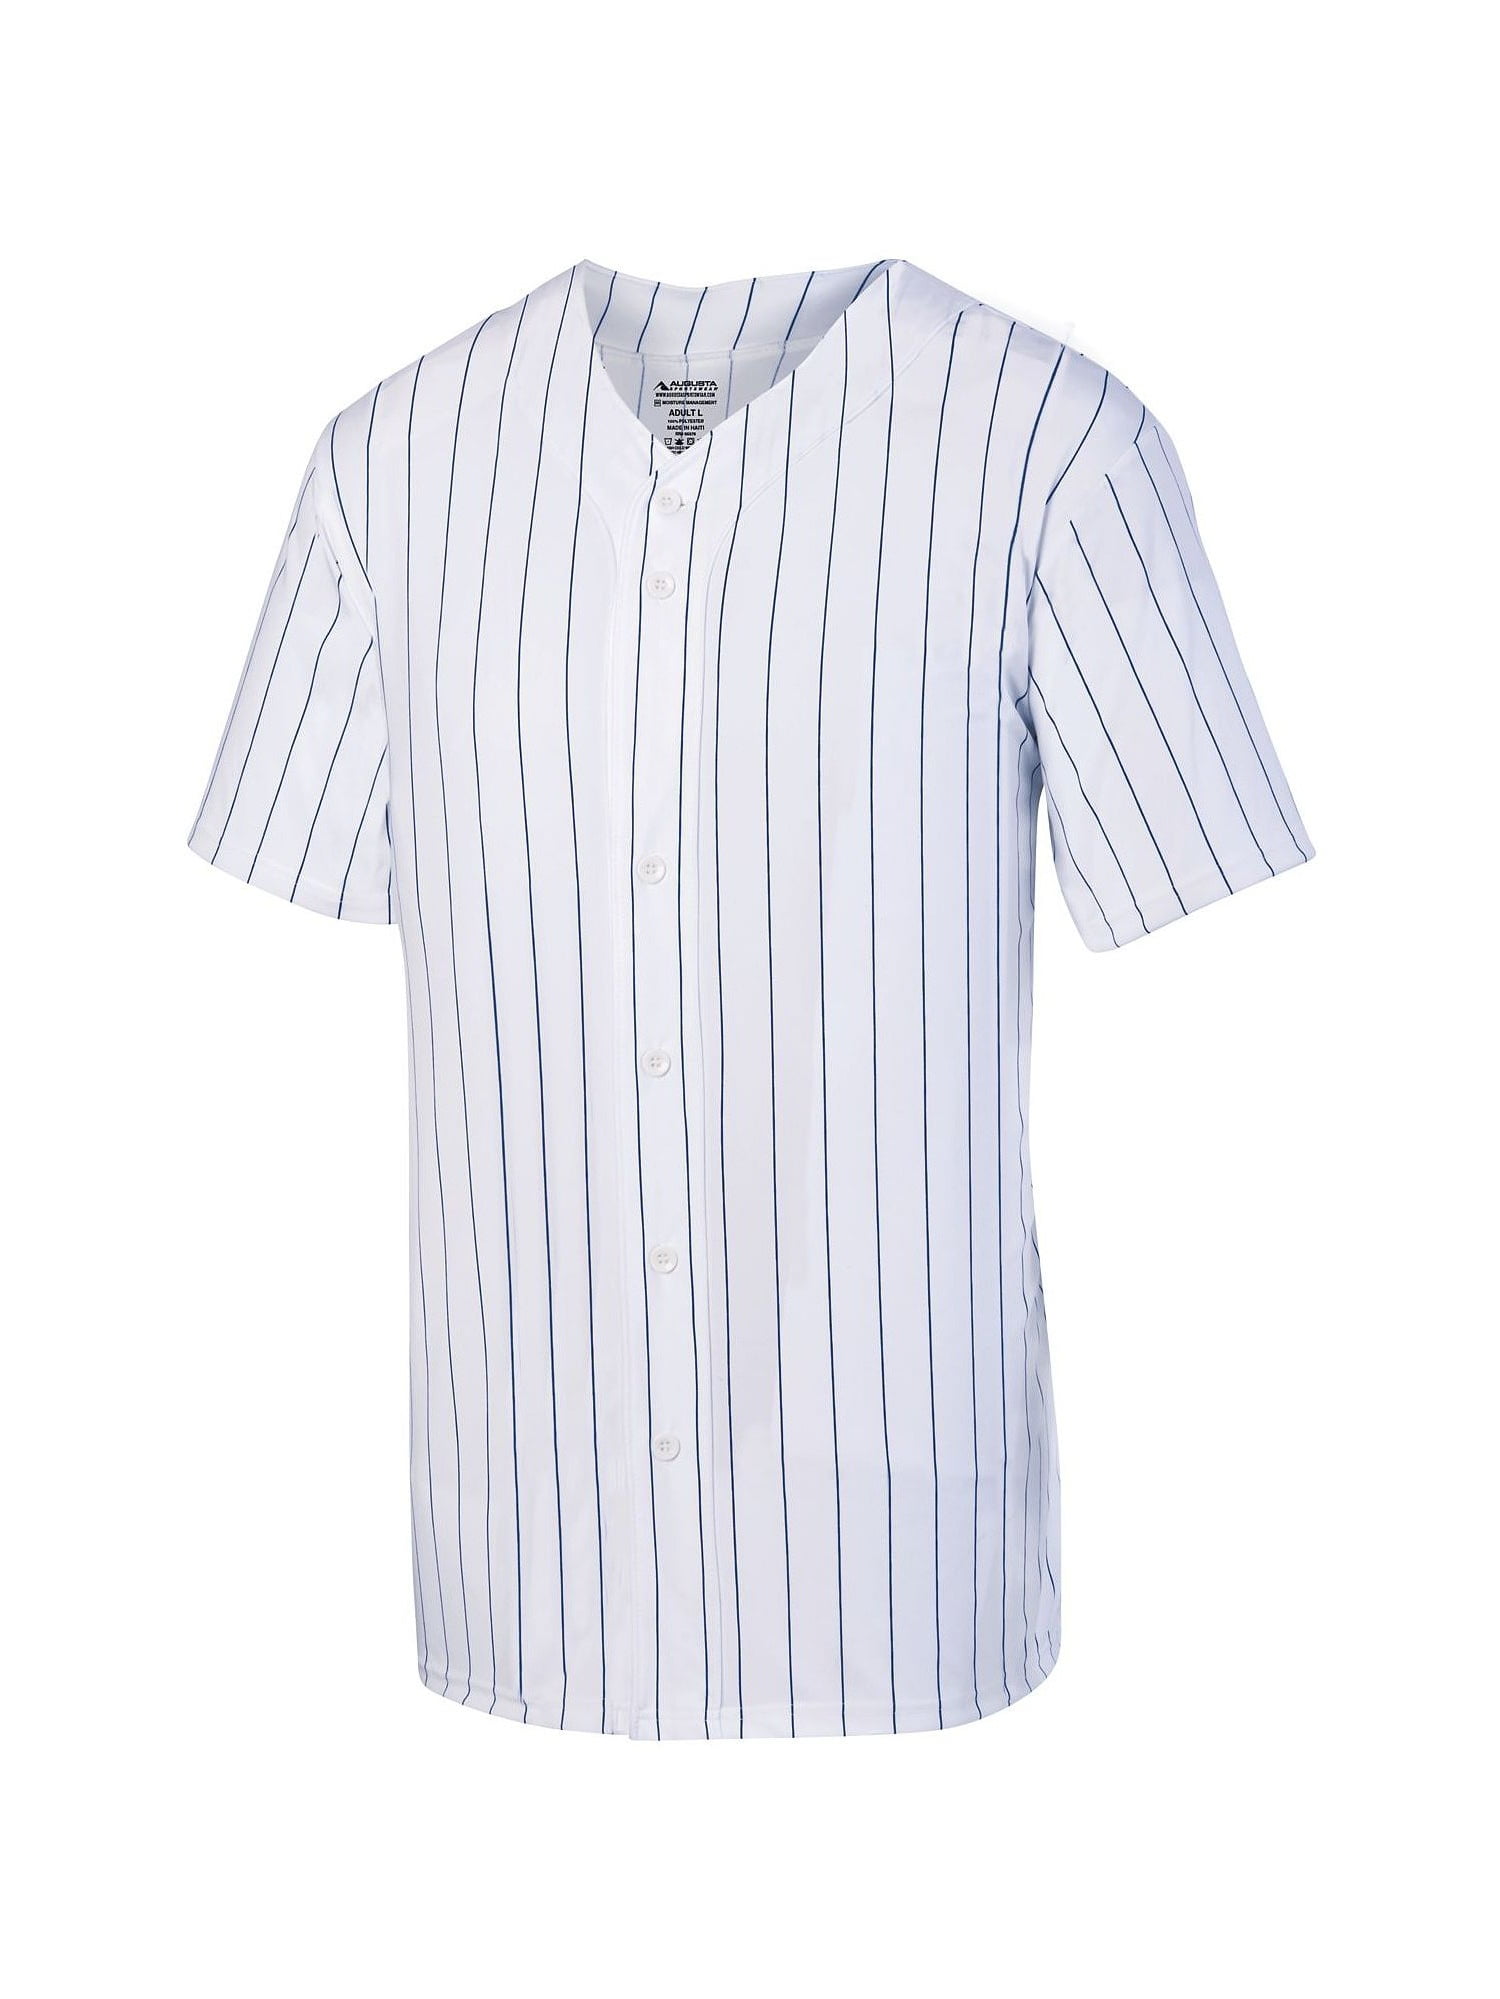 augusta sportswear baseball jersey